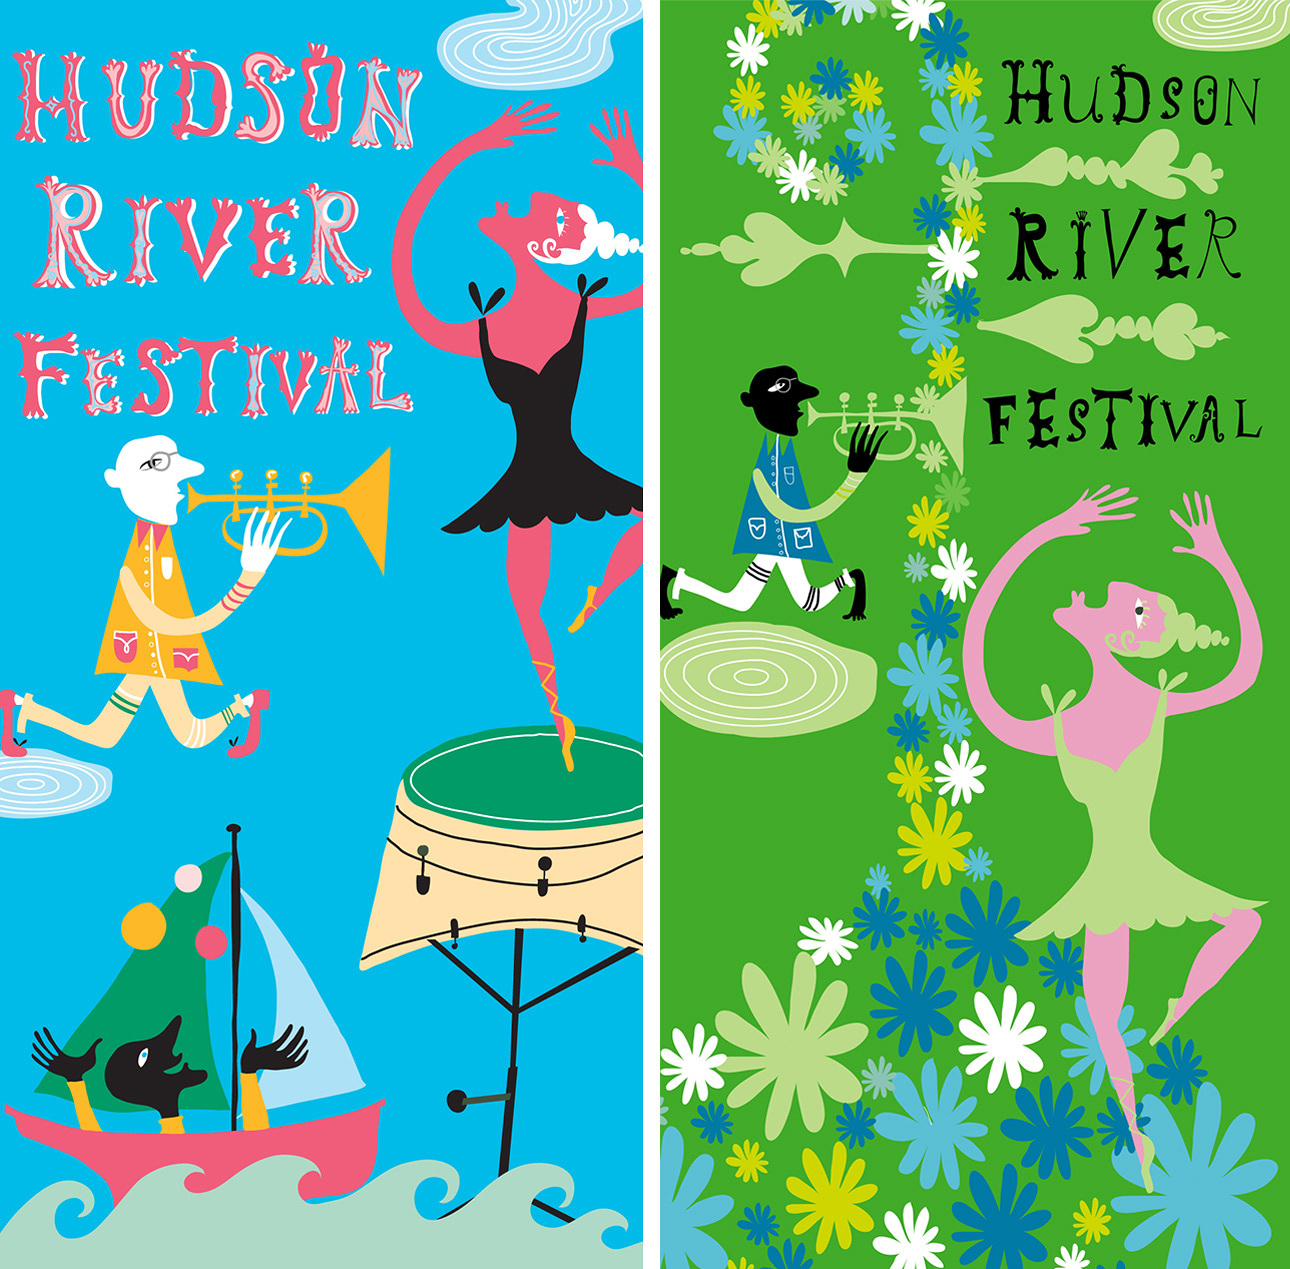 Hudson River Festival